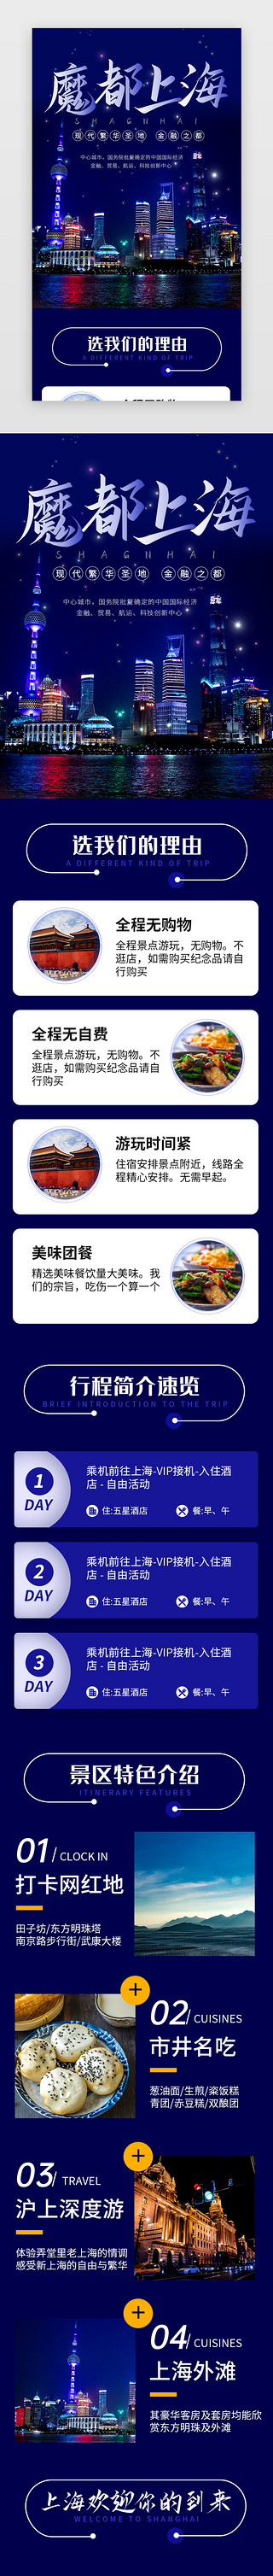 出游图UI设计素材_蓝色魔都上海旅行景点介绍H5长图海报